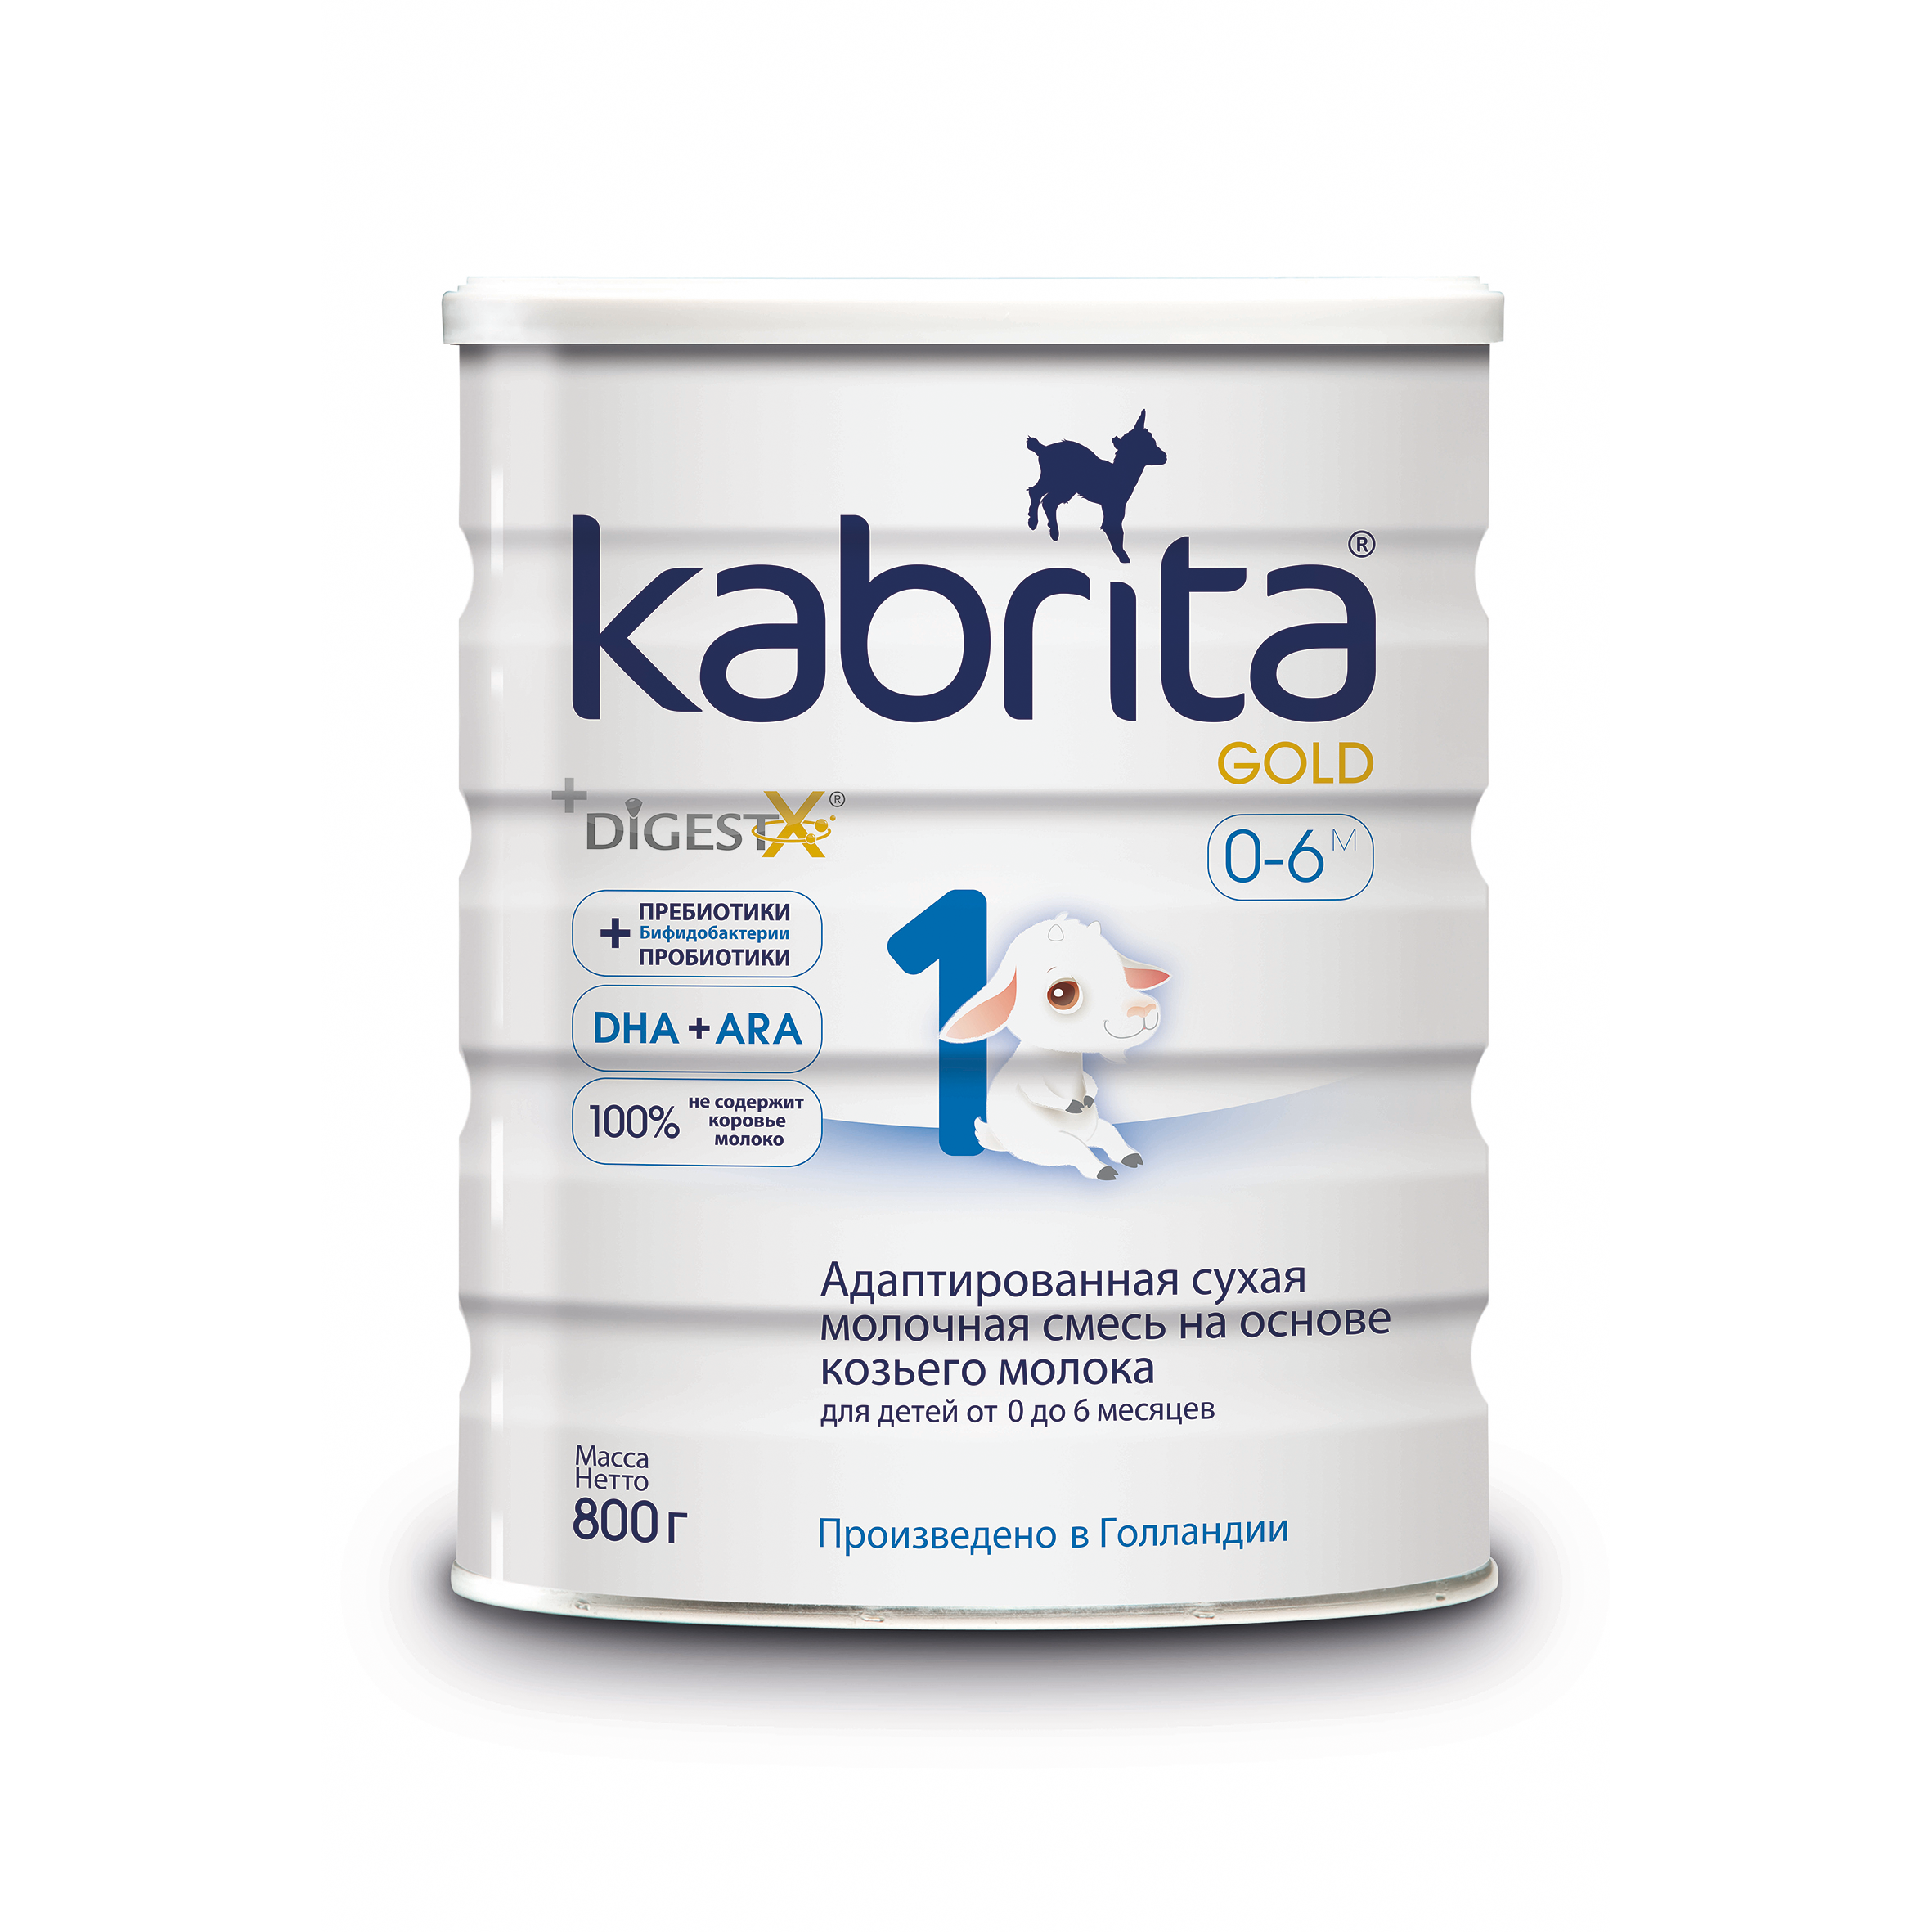 Смесь на основе козьего молока Kabrita Gold от 0 до 6 мес. 800 г адаптированная смесь kabrita 3 gold на основе козьего молока 2х800гр